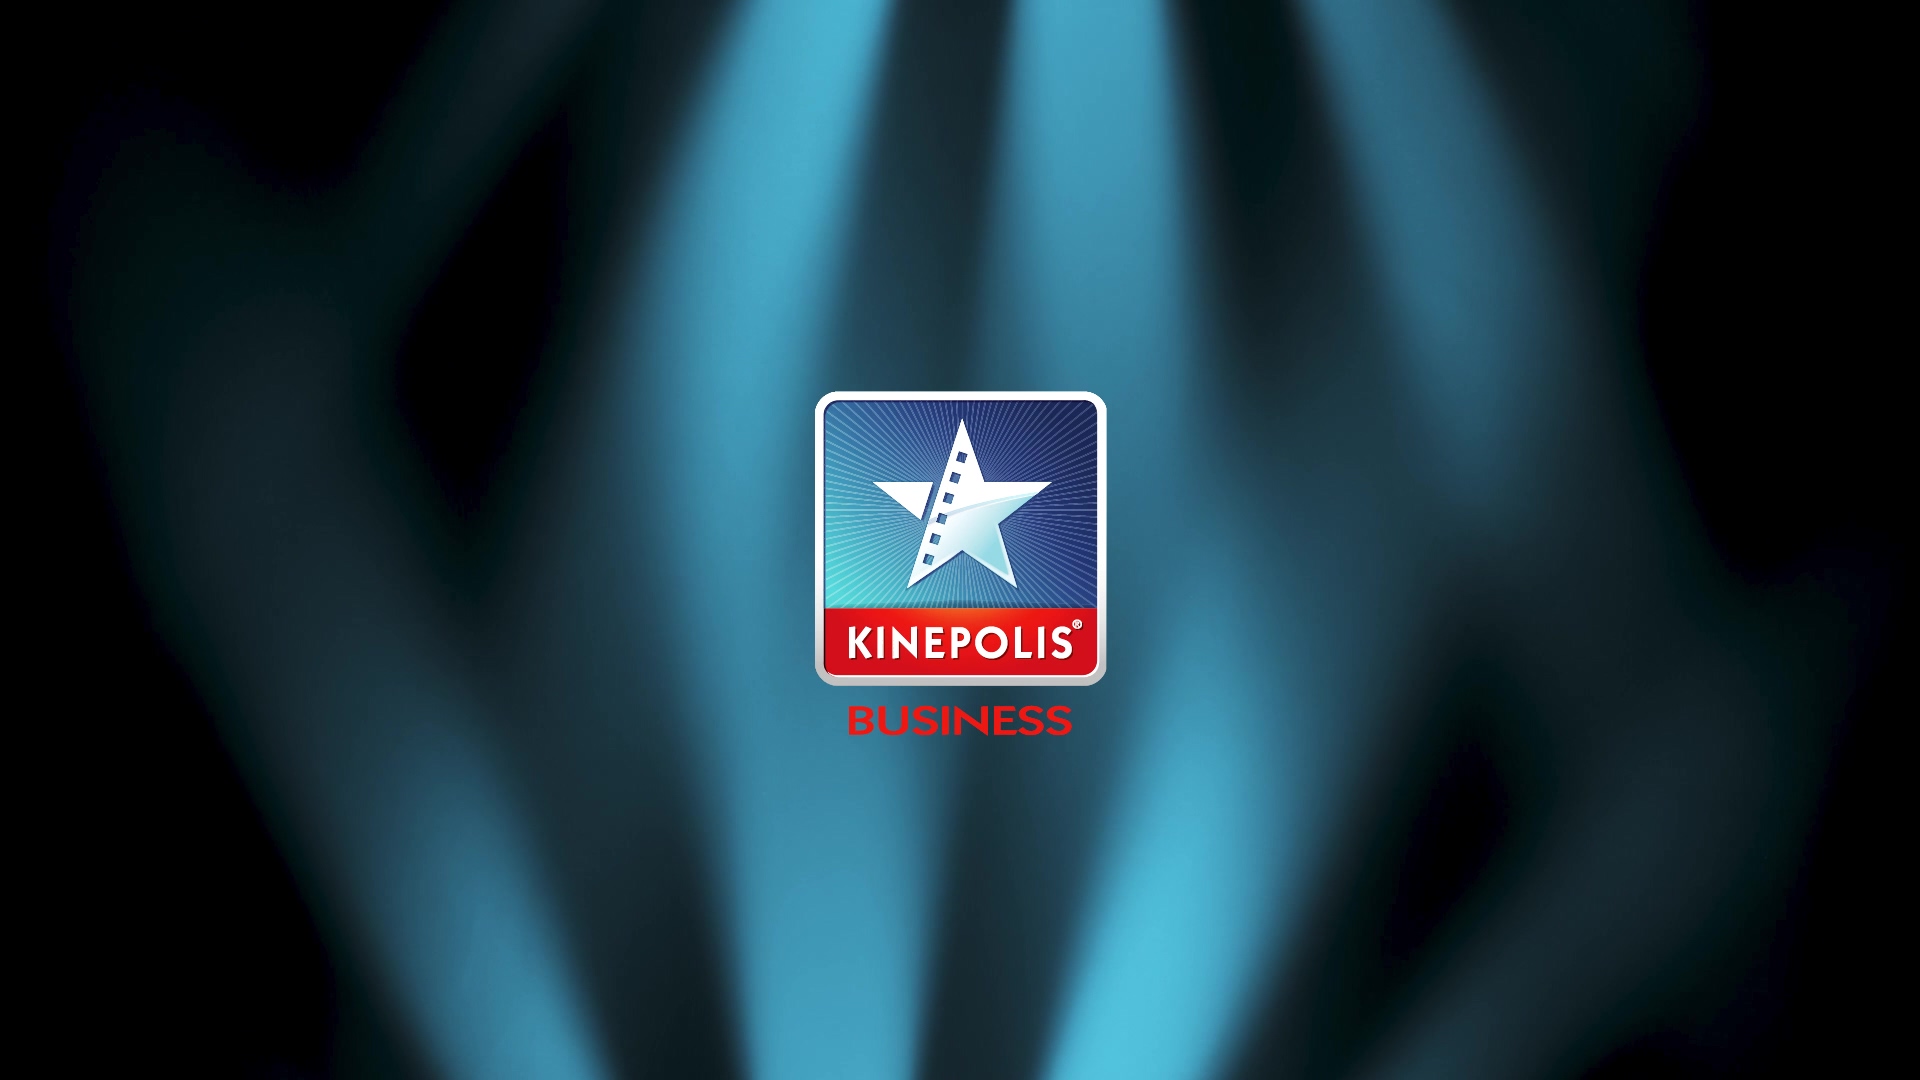 KINEPOLIS USP_16-9_FR_HD